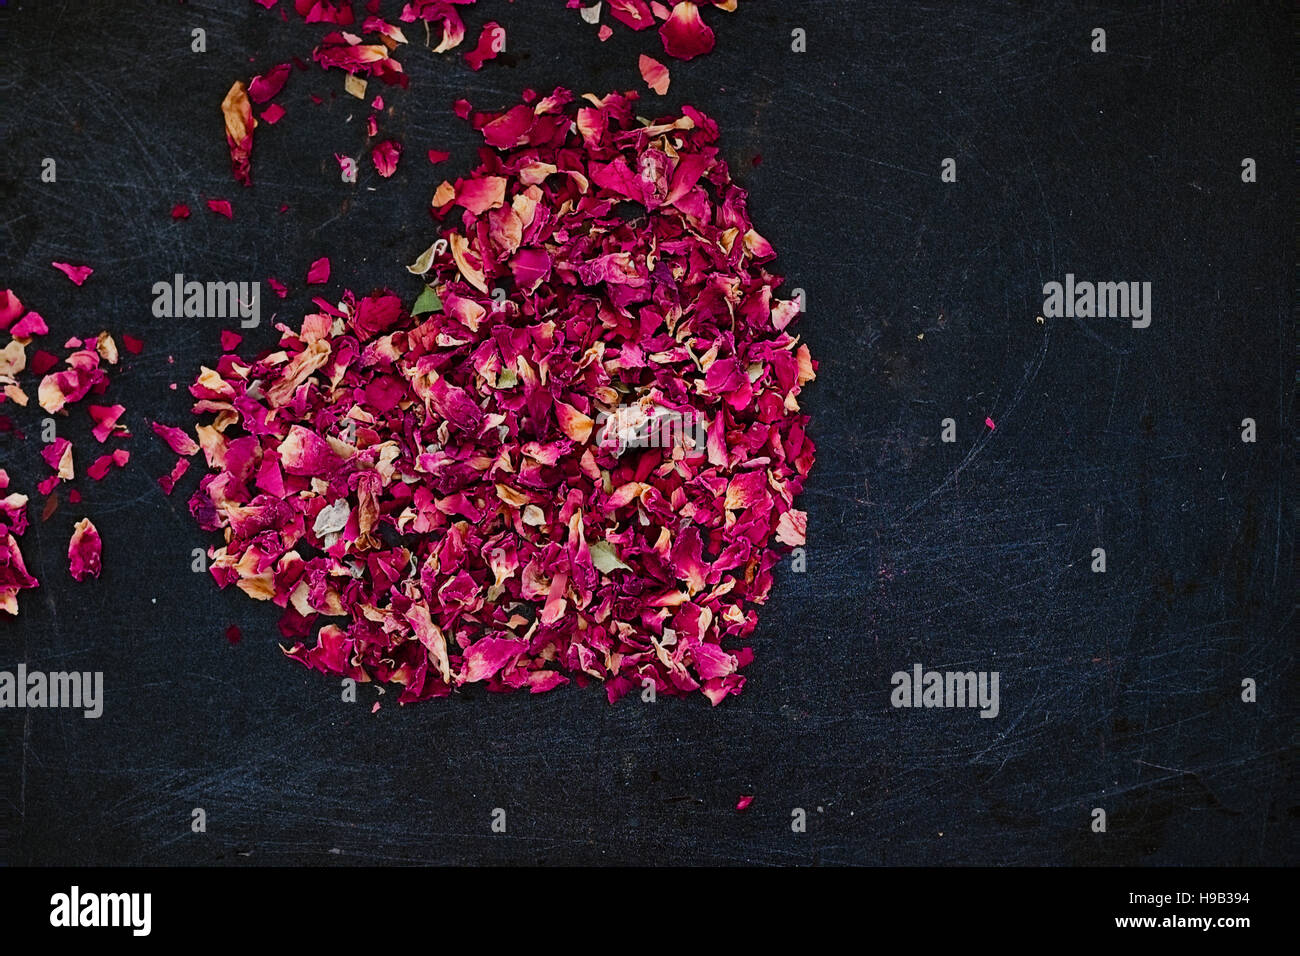 Essiccati petali di rosa a forma di cuore su uno sfondo scuro. Ingrediente romantico per il tè, vasca da bagno o cosmetici. Copia dello spazio. Copia dello spazio. Dark cibo fotografia Foto Stock